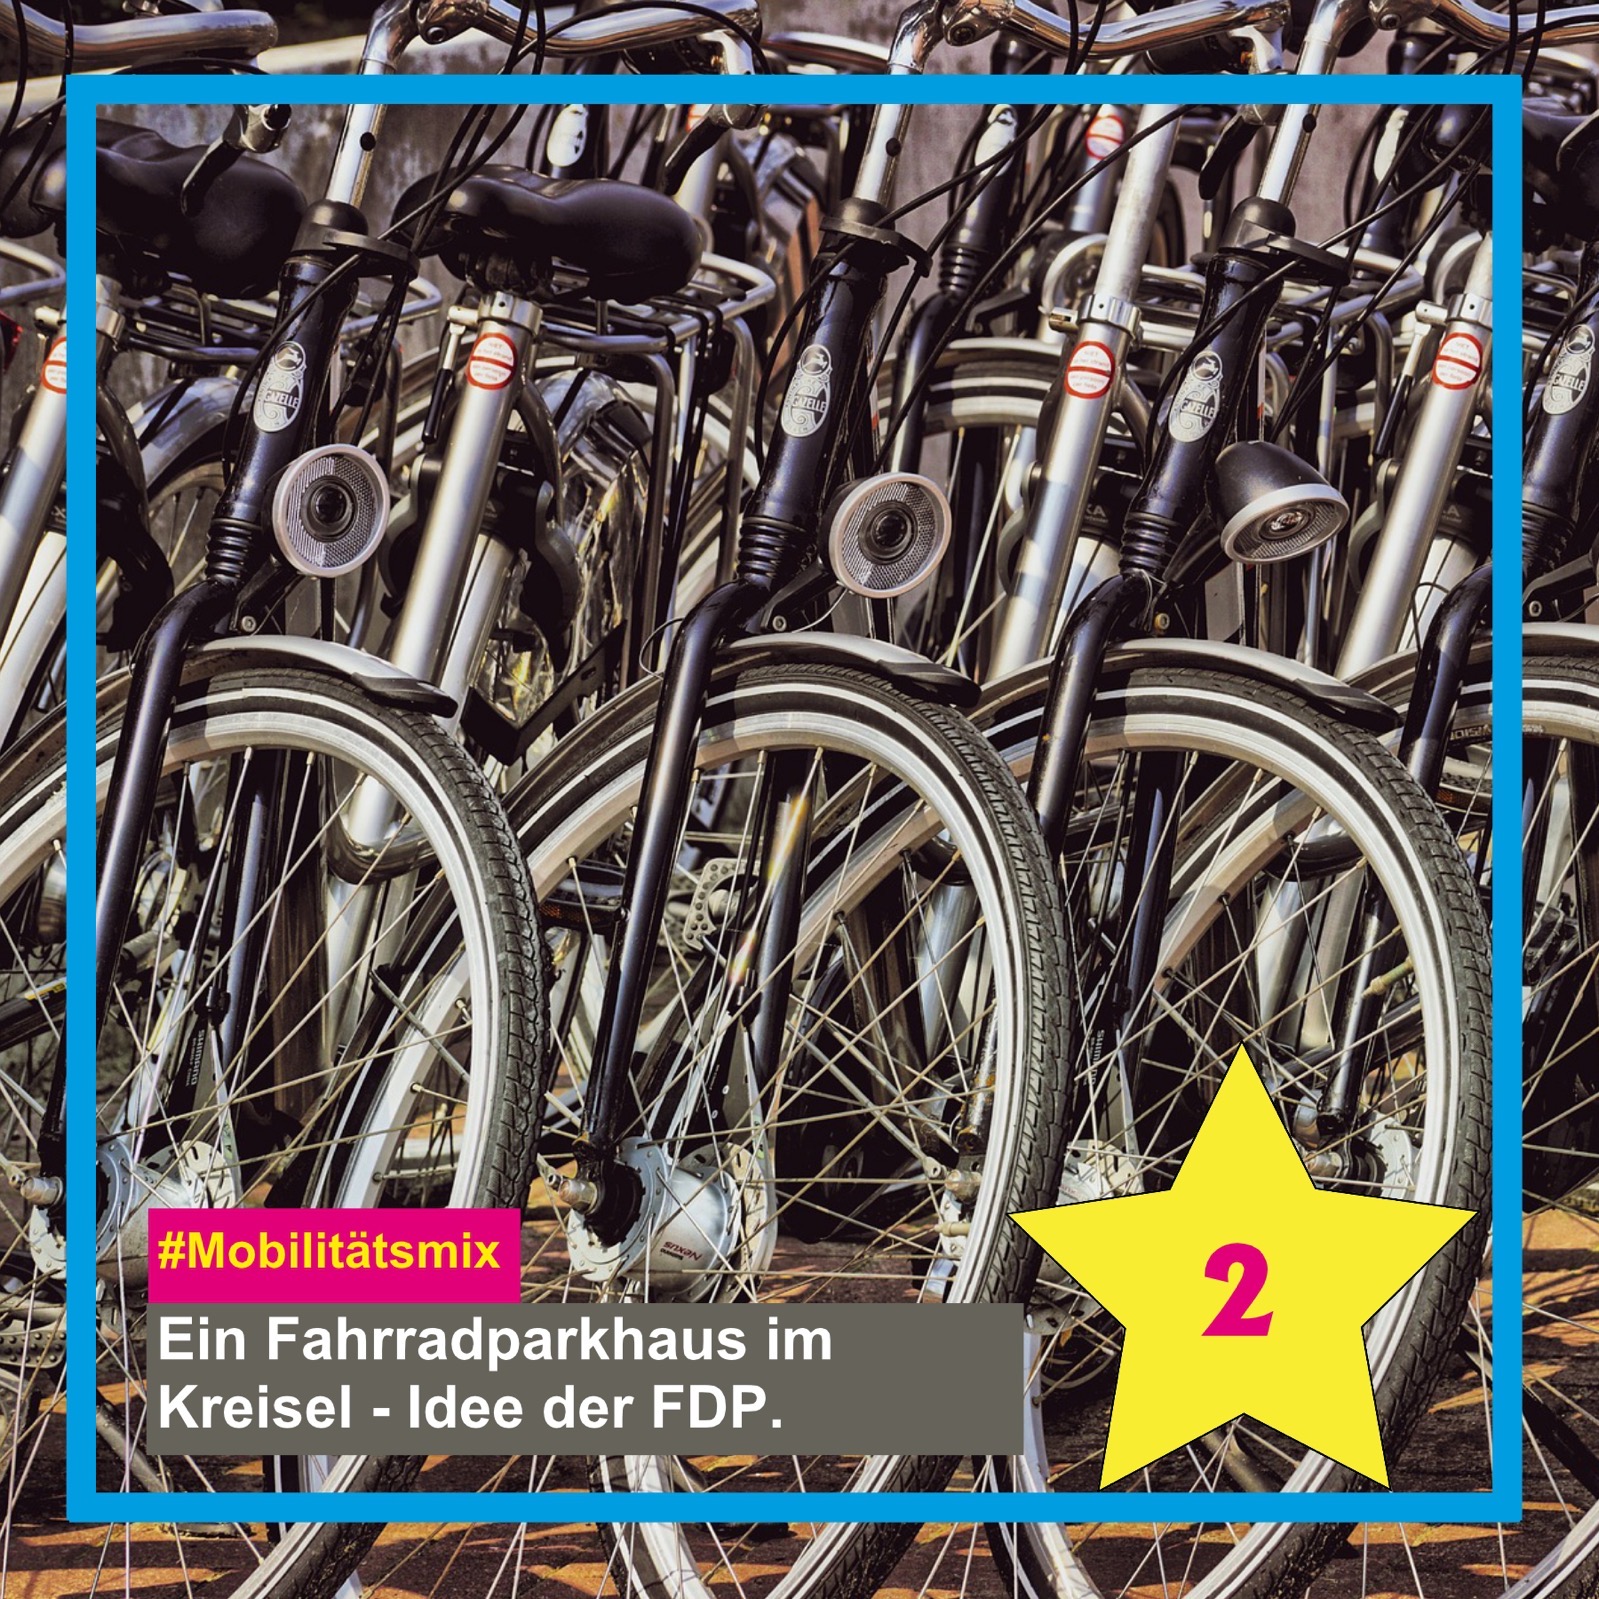 Mobilitätsmix - Ein Fahrradparkhaus im Kreisel - Idee der FDP